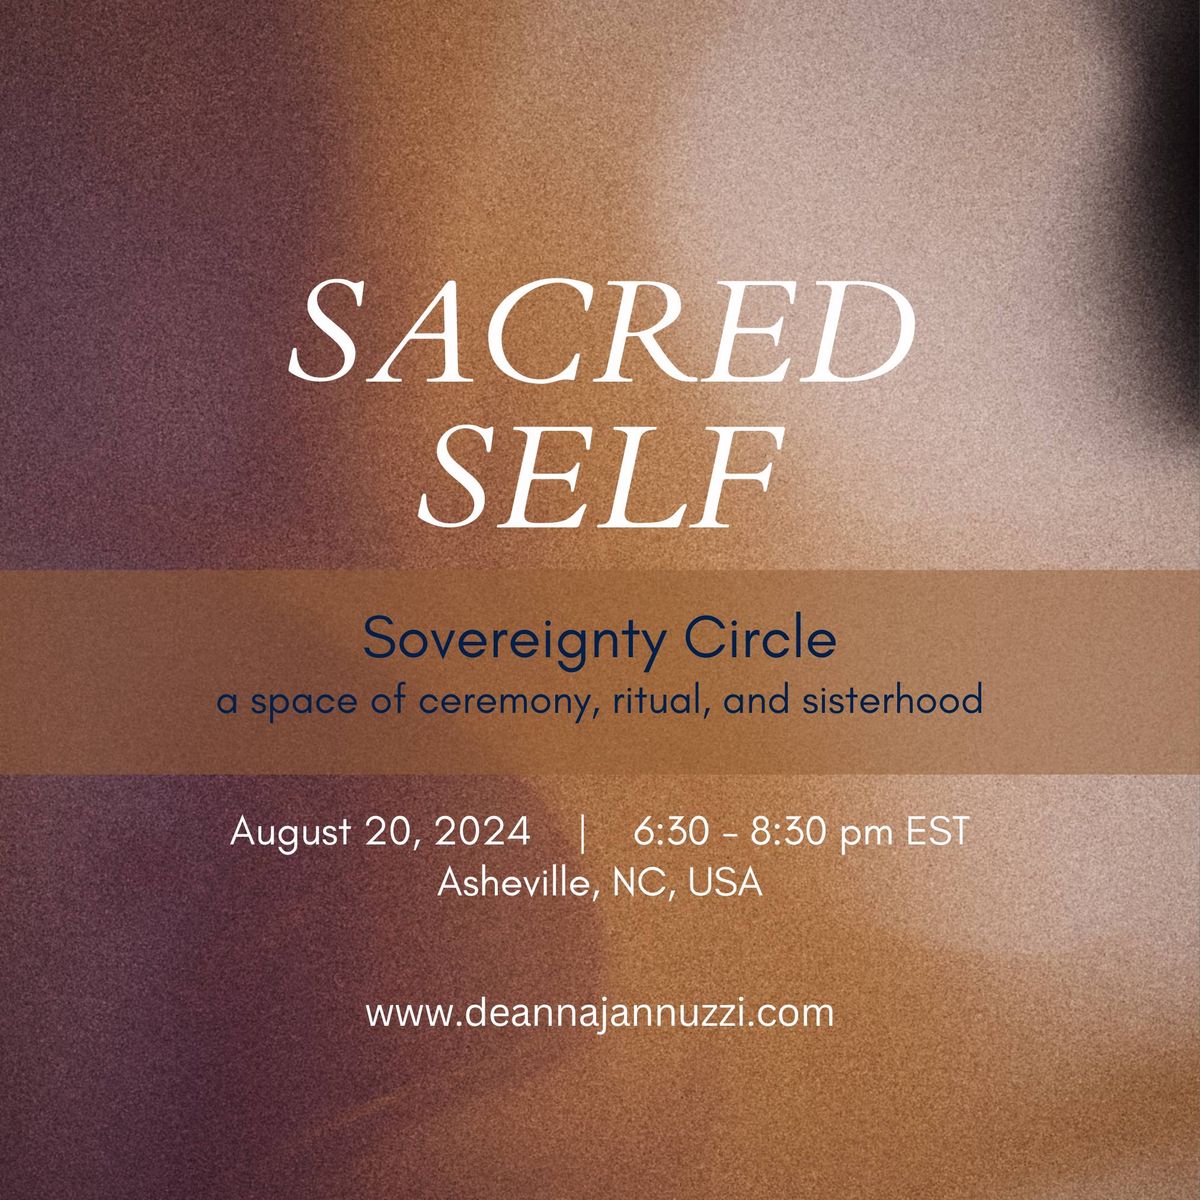 8\/20 Womans Circle - Sacred Self Sovereignty Circle 